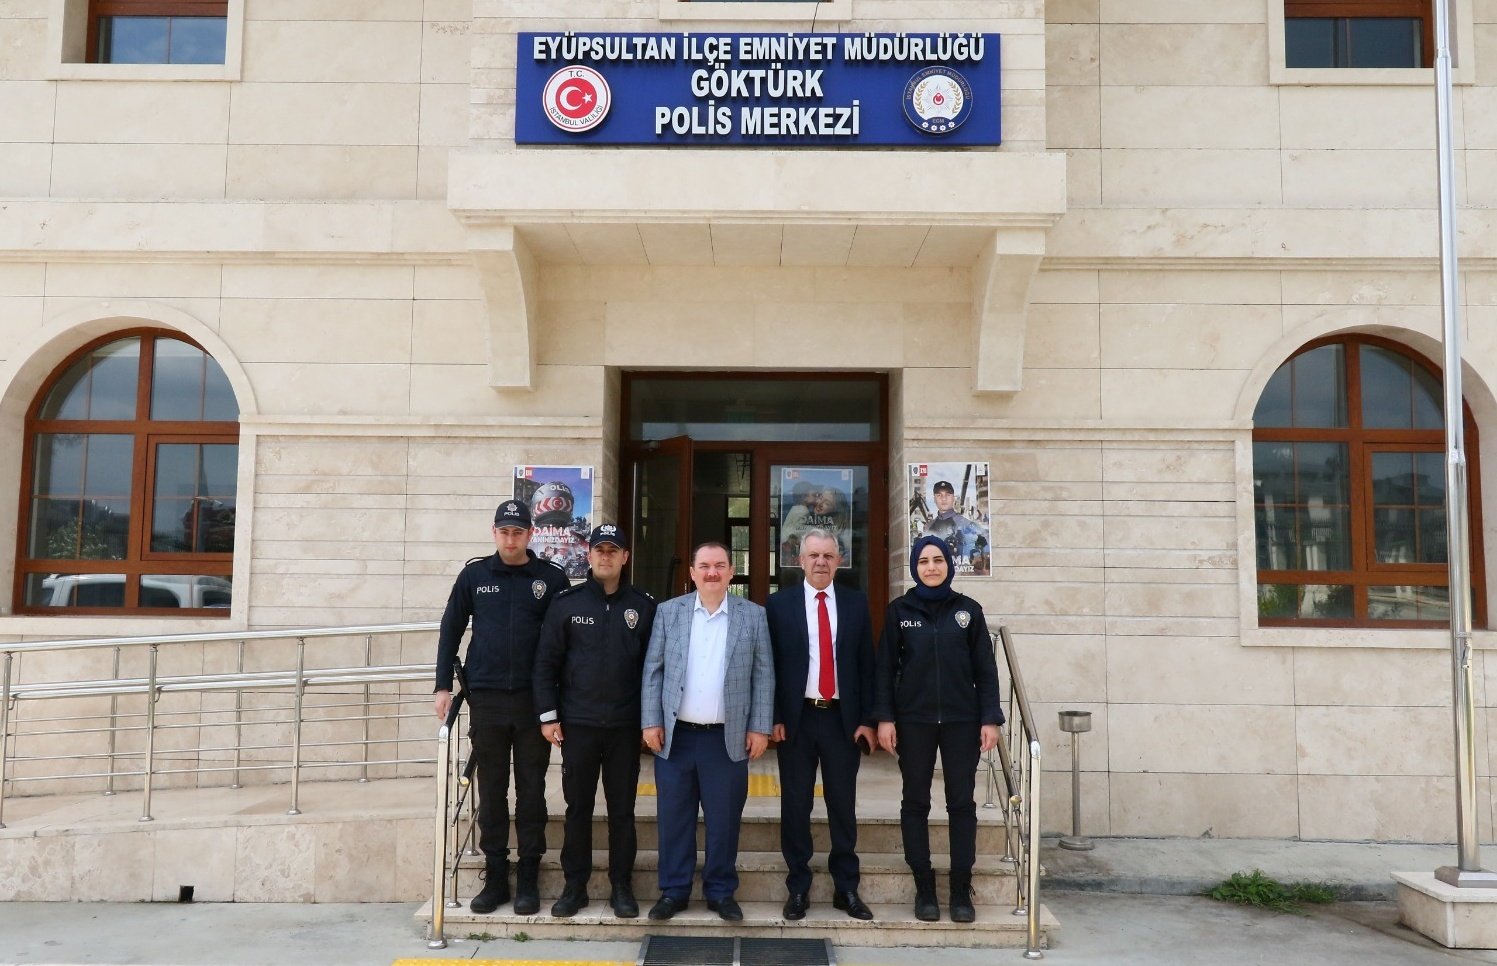 Eyüpultan İlçe Emniyet Müdürü Levent Türkmen Göktürk Polis Amirliği